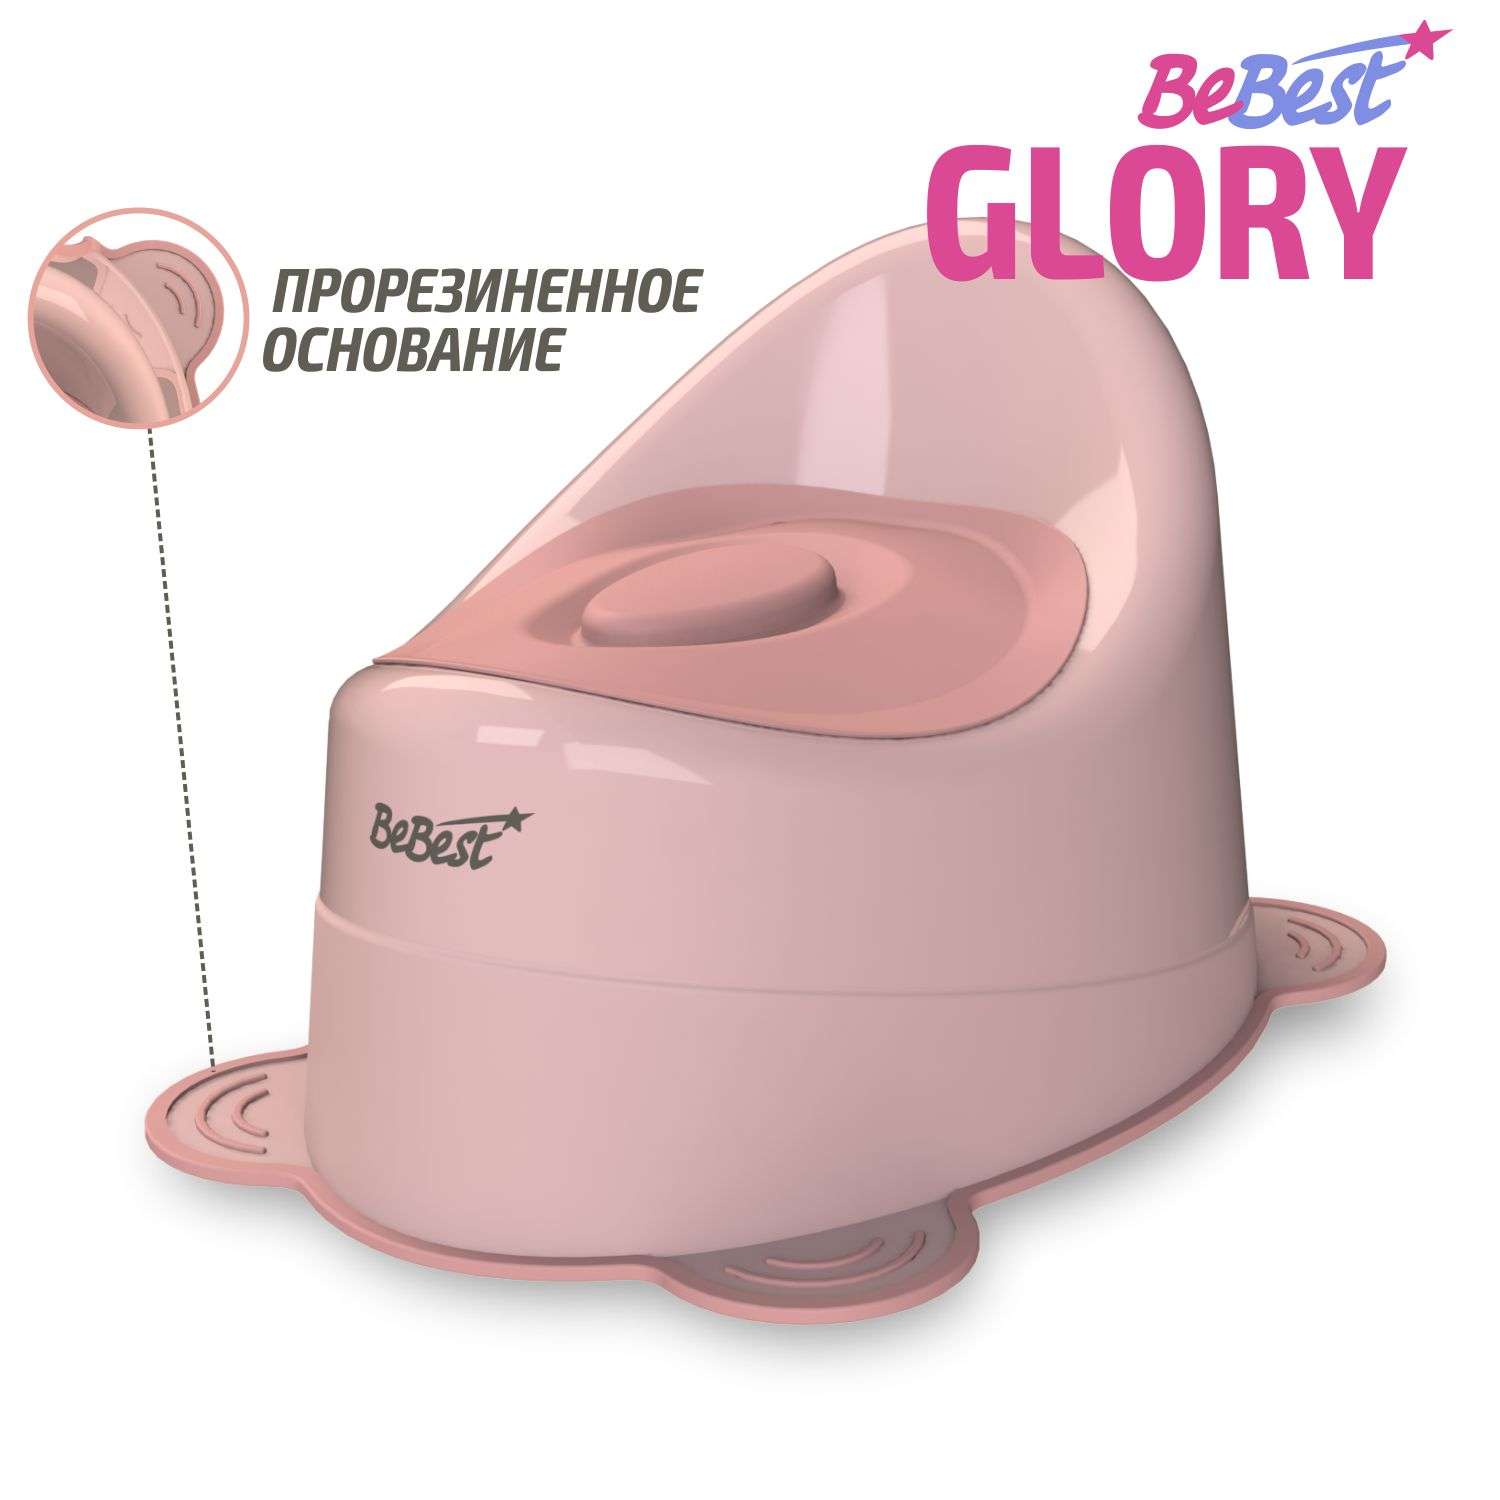 Горшок детский BeBest Glory розовый - фото 1